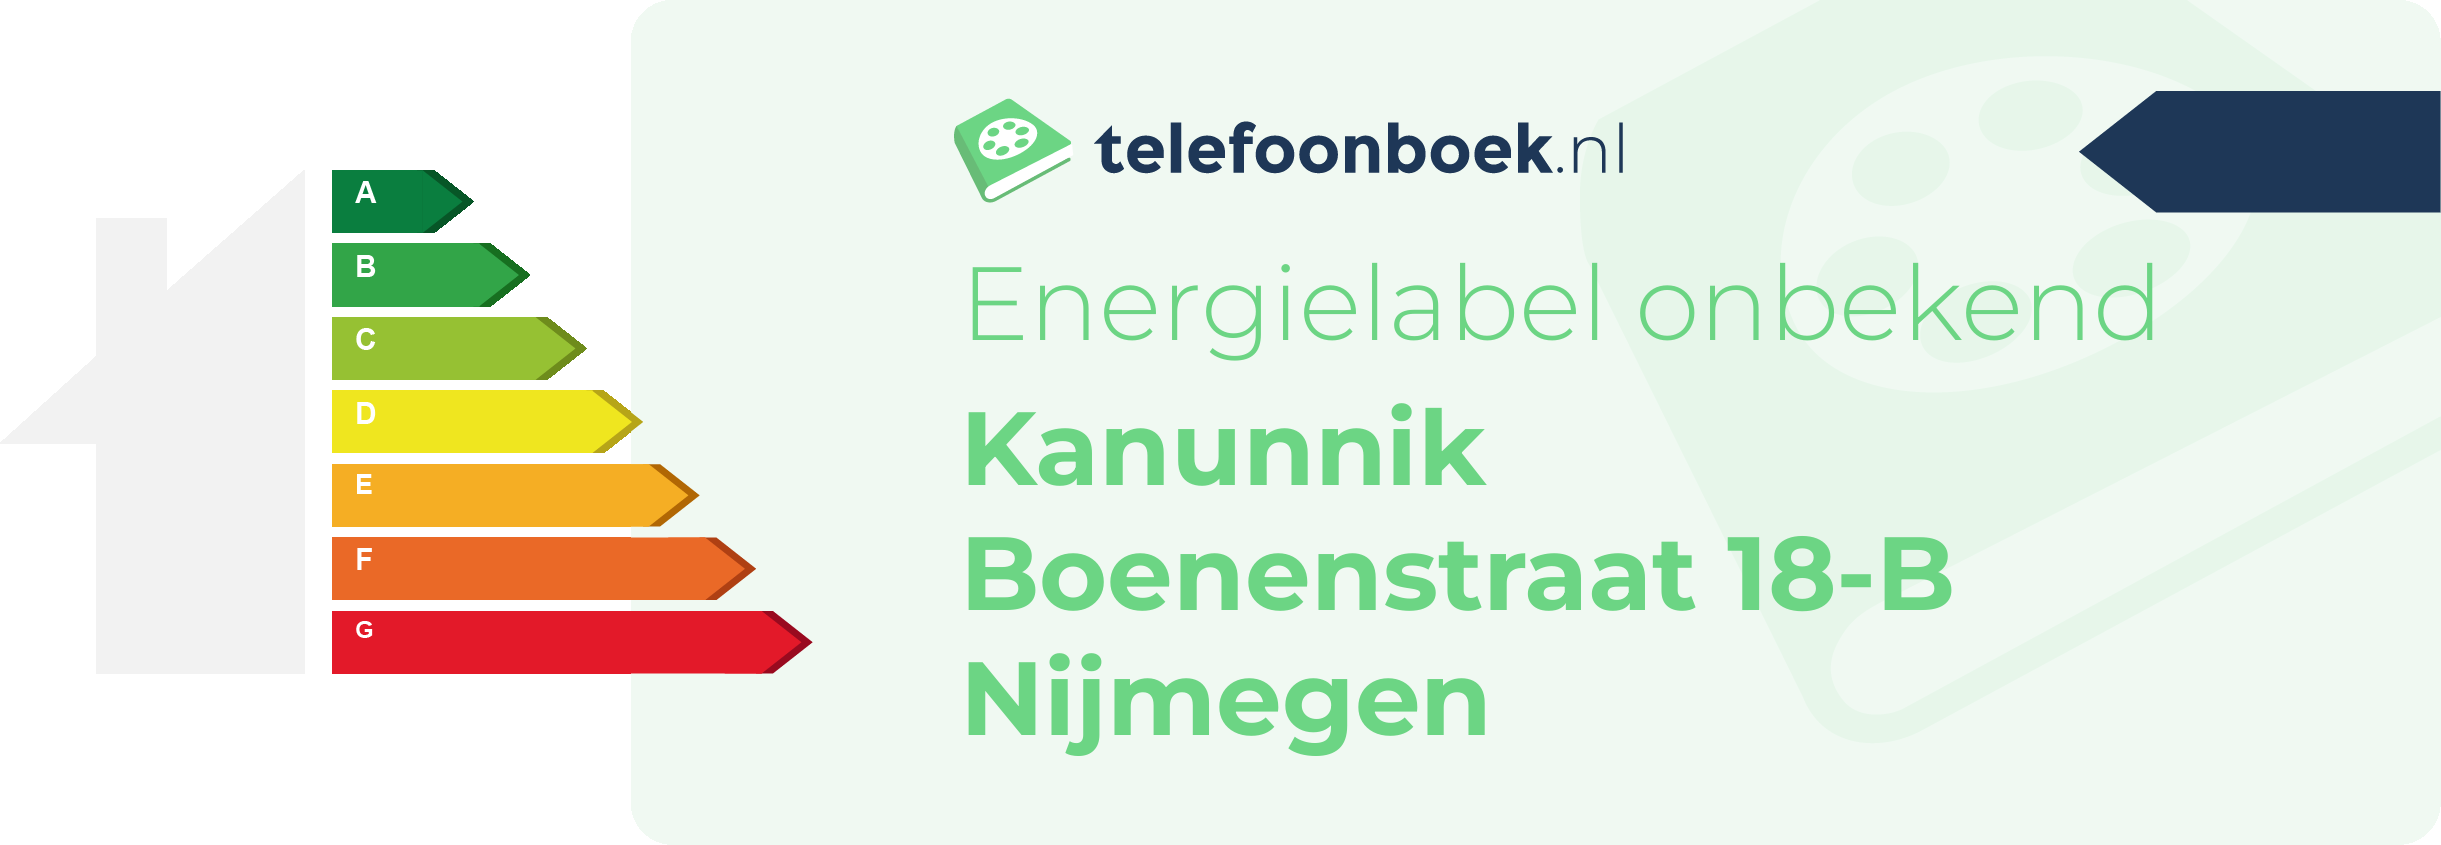 Energielabel Kanunnik Boenenstraat 18-B Nijmegen